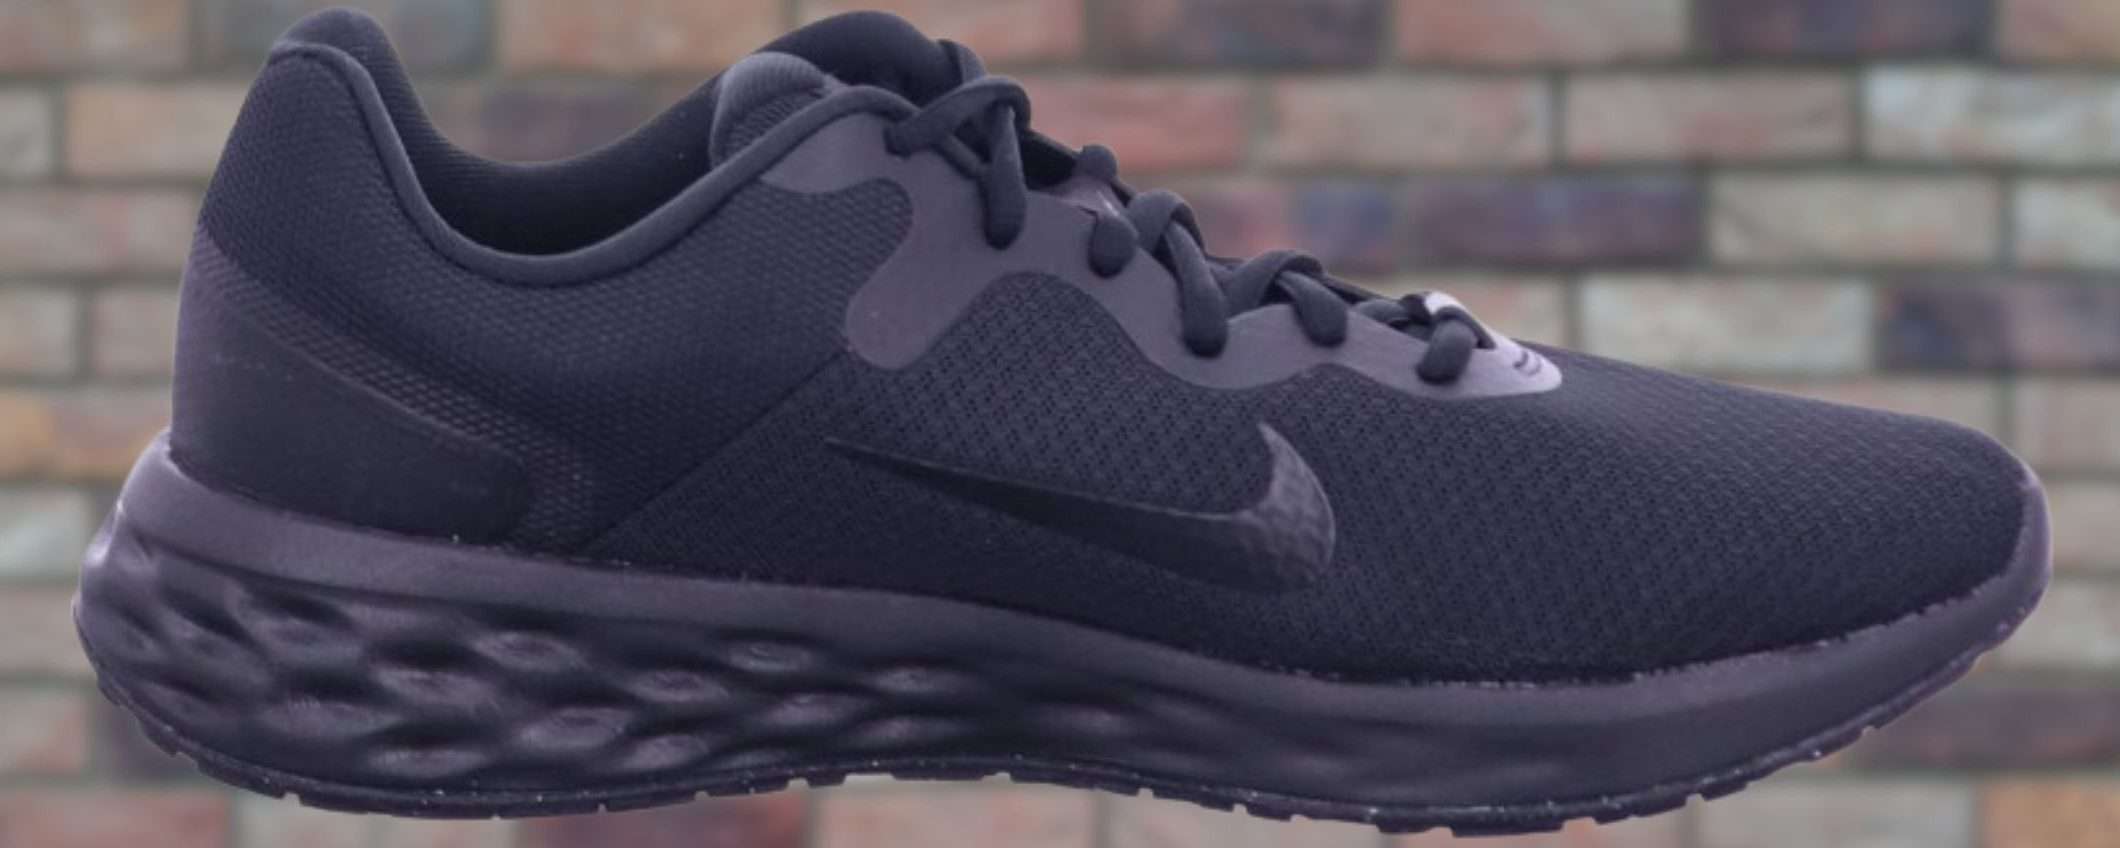 Scarpe Nike a 40,50€ su Amazon: calzature ECCELLENTI e scontatissime